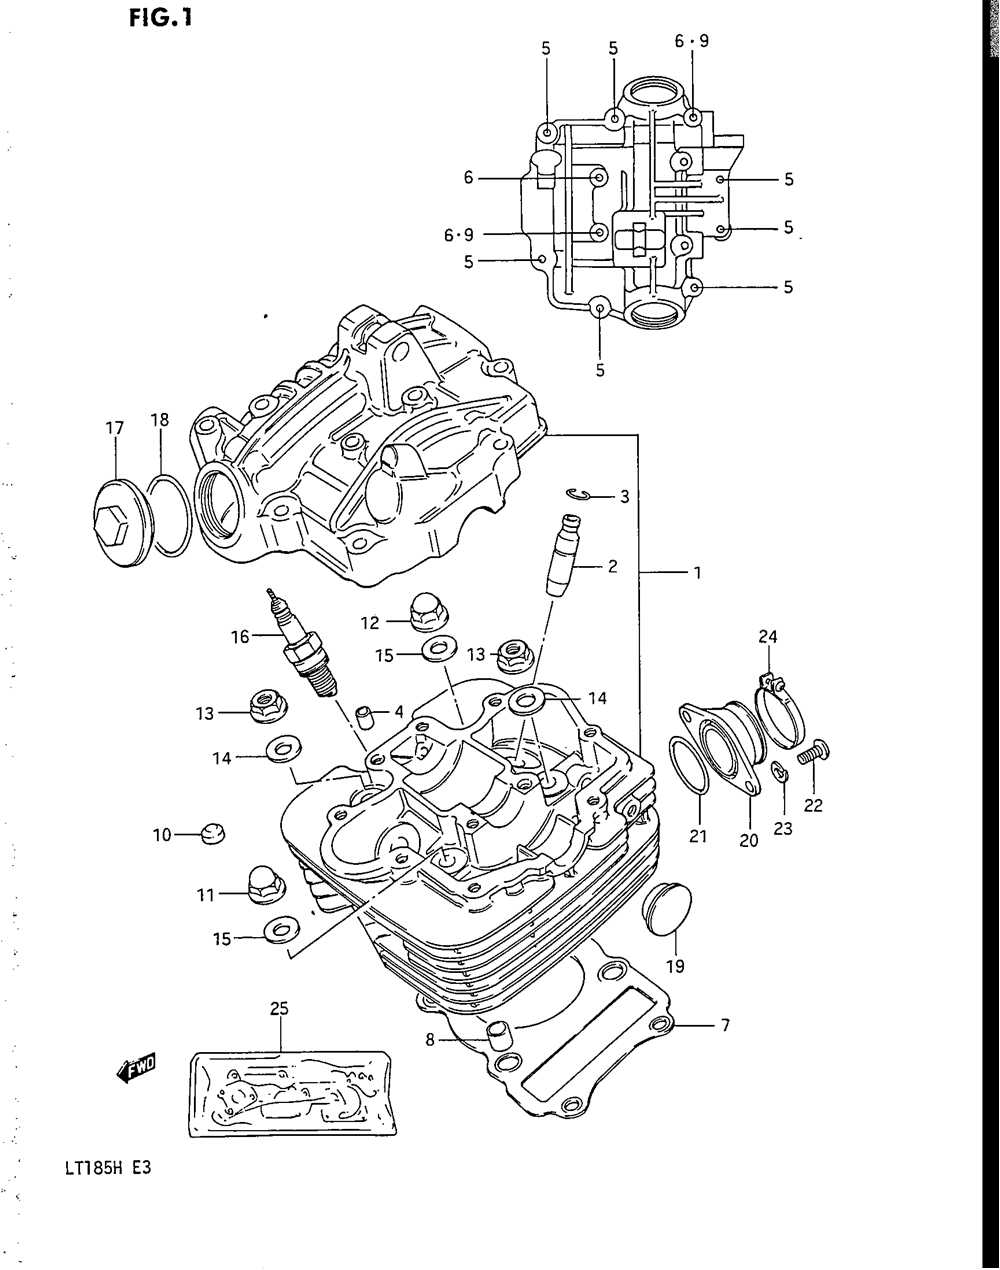 1985 Suzuki Atvs Parts Fiche